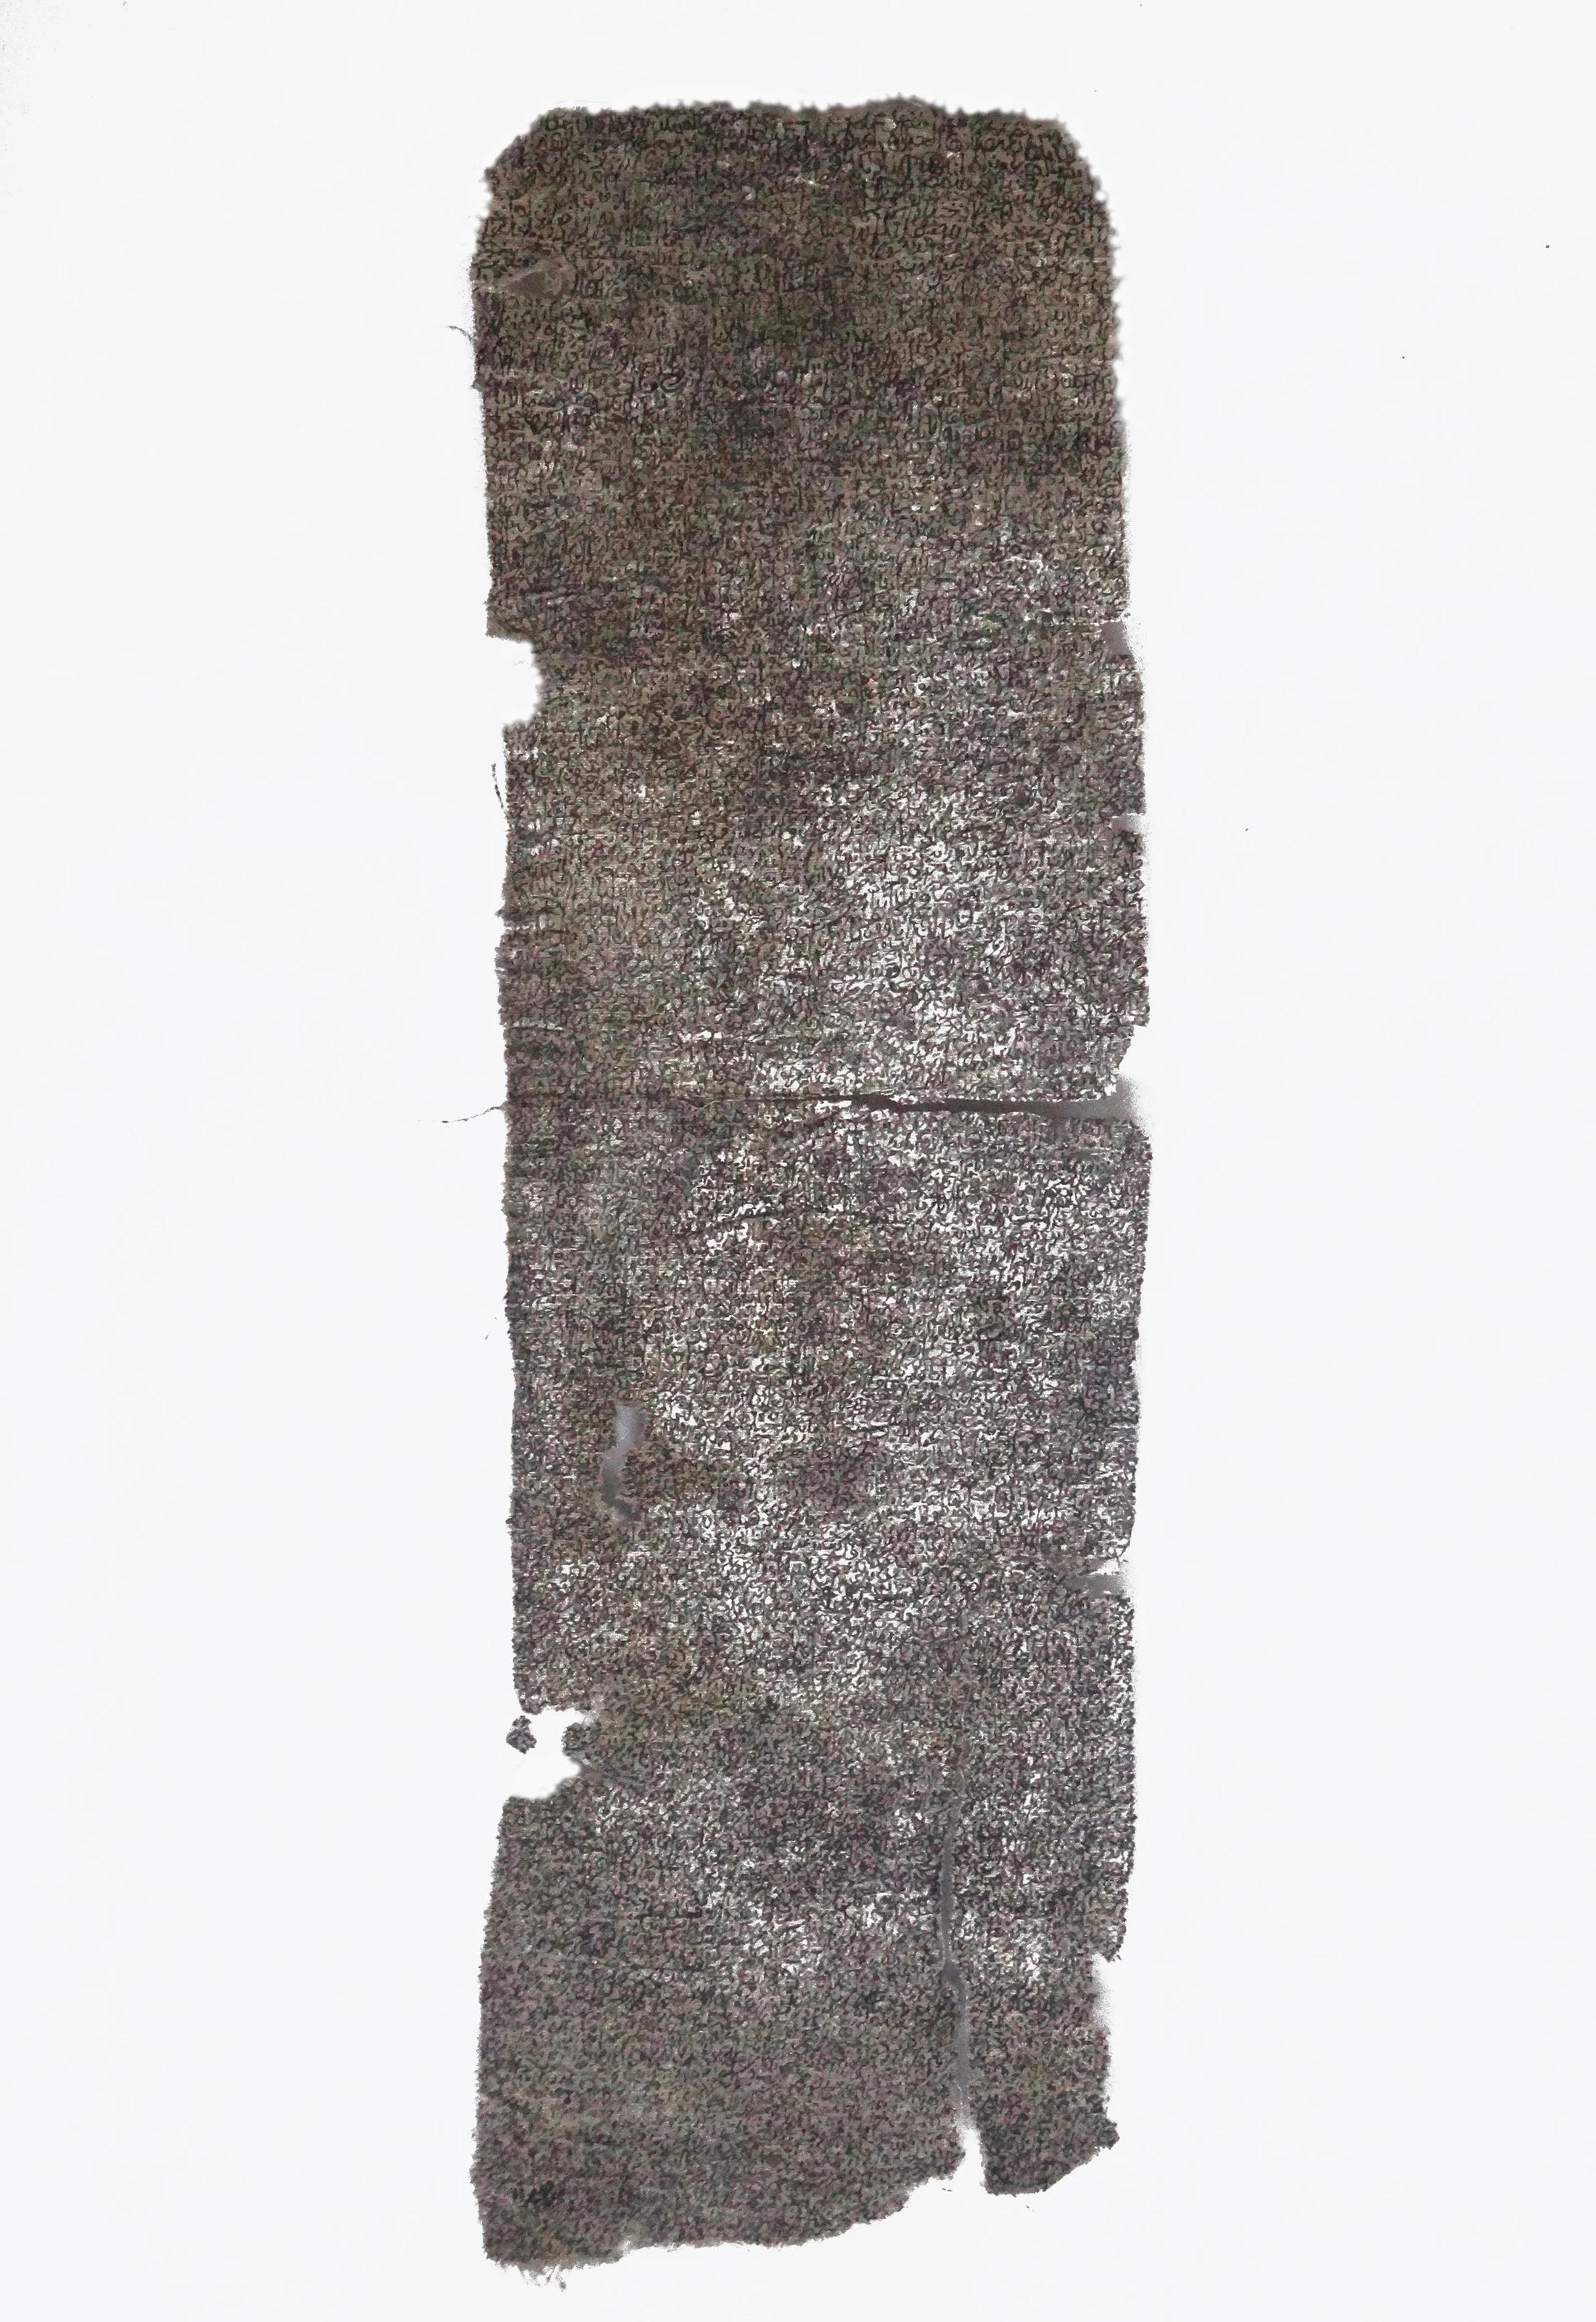 "Abstract Script 9" Peinture à l'encre sur tissu 16" x 4" pouces par Mohamed Monaiseer


Dans ce travail, je développe une philosophie personnelle de la trinité - l'union de trois en un. La trinité se compose de l'énergie, de la nature et de la